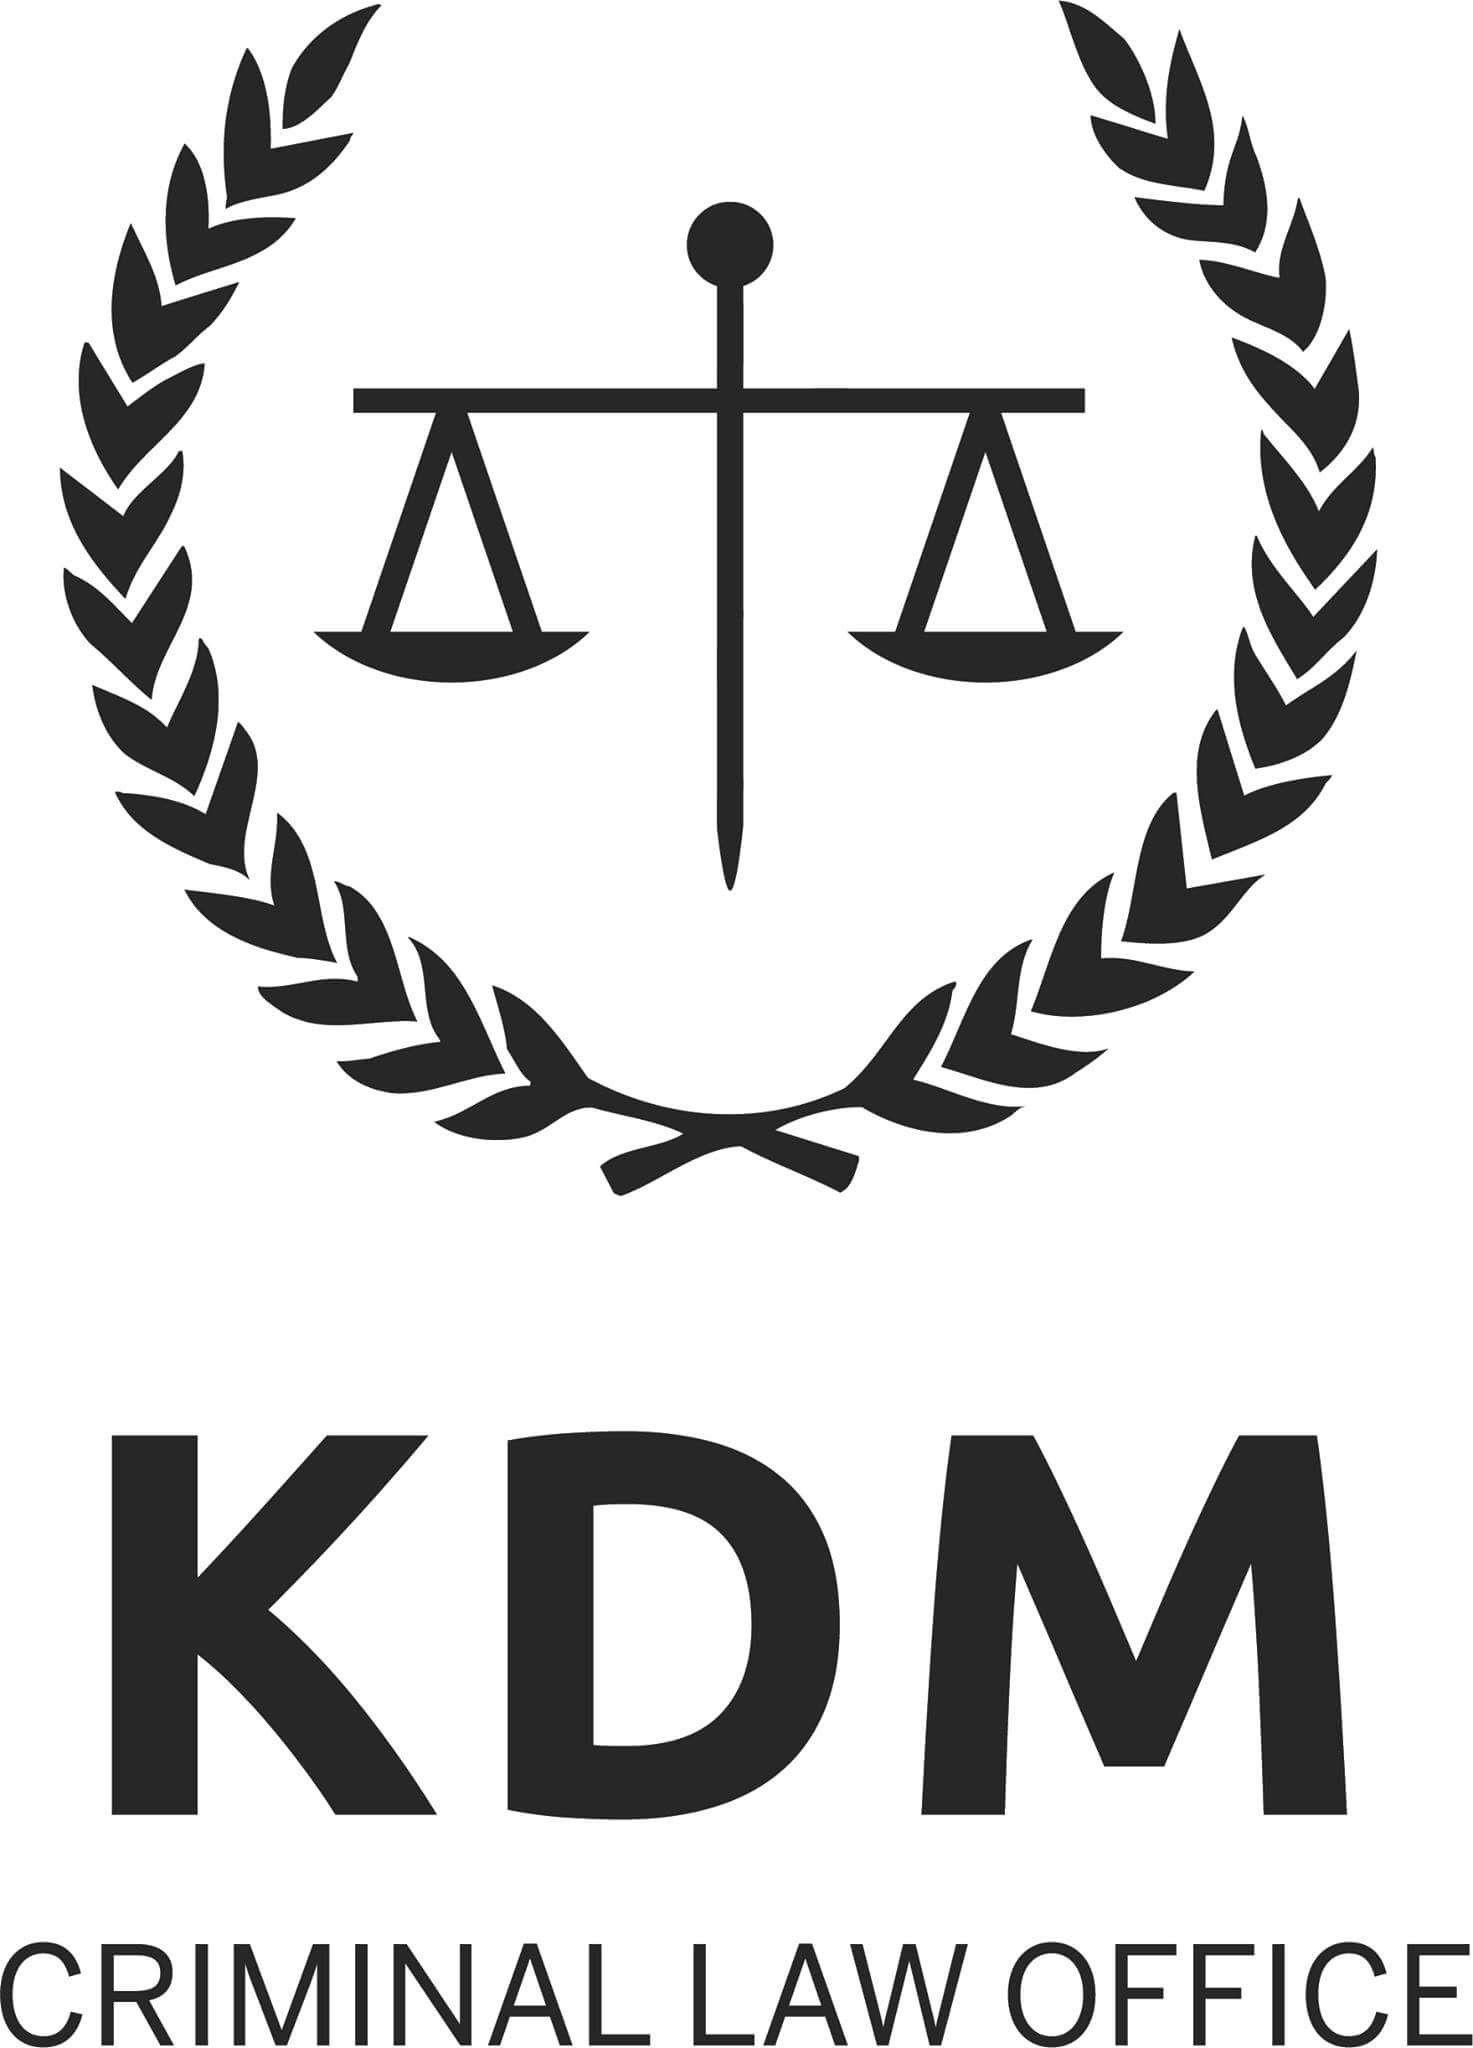 KDM Logo - KDM CRIMINAL LAW OFFICE LOGO 2018 Criminal Lawyers